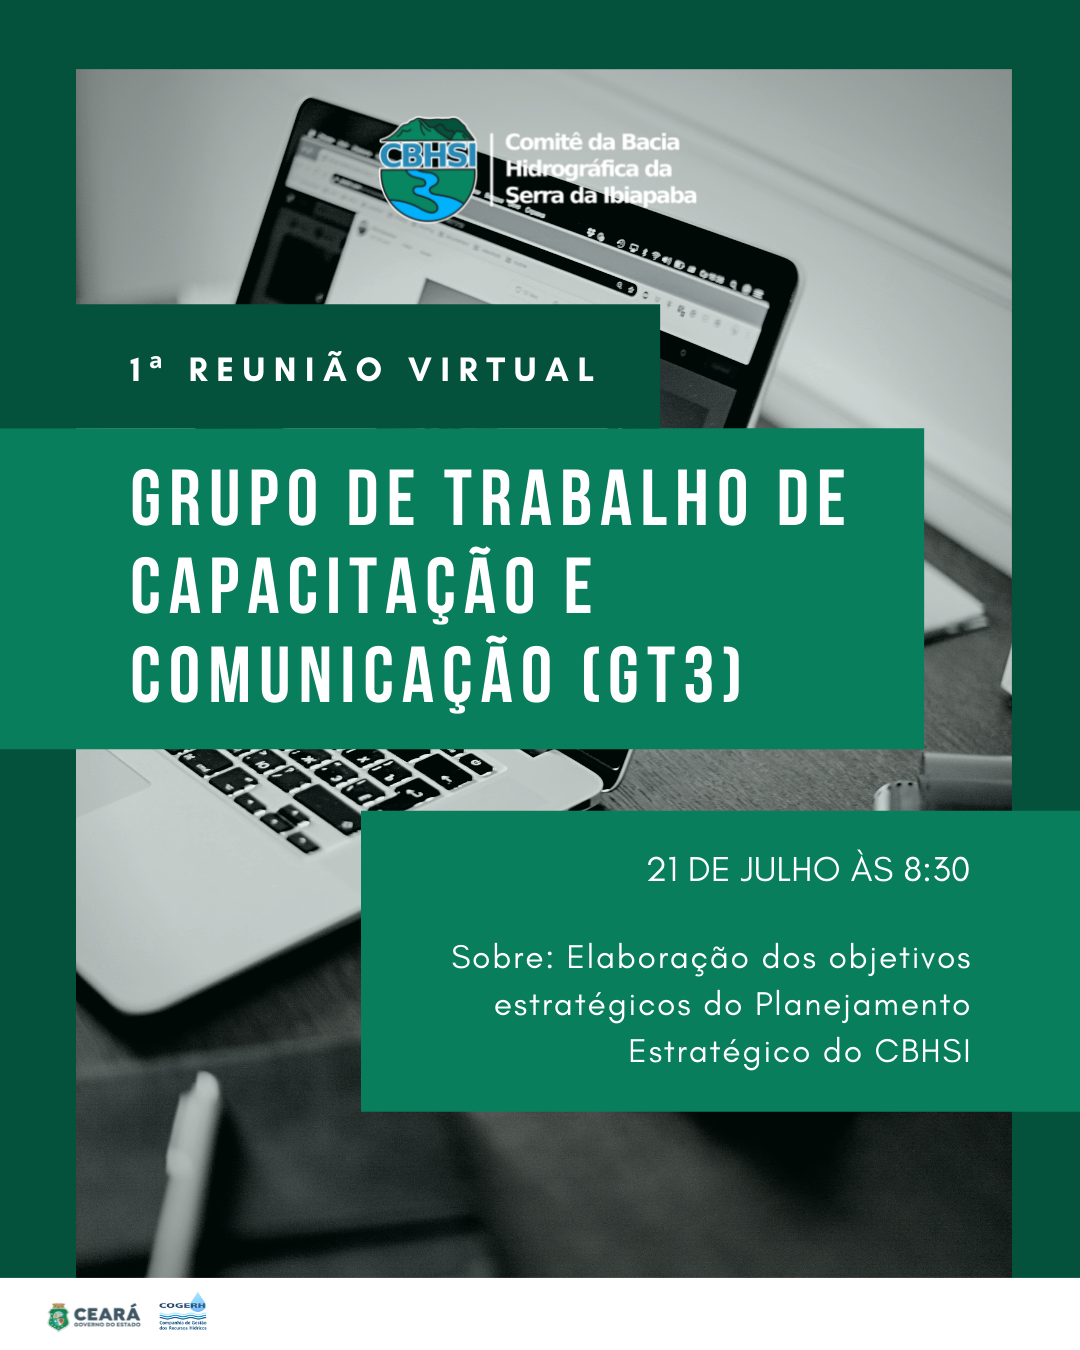 1ª Reunião virtual com o Grupo de Trabalho de Capacitação e Comunicação (GT3)